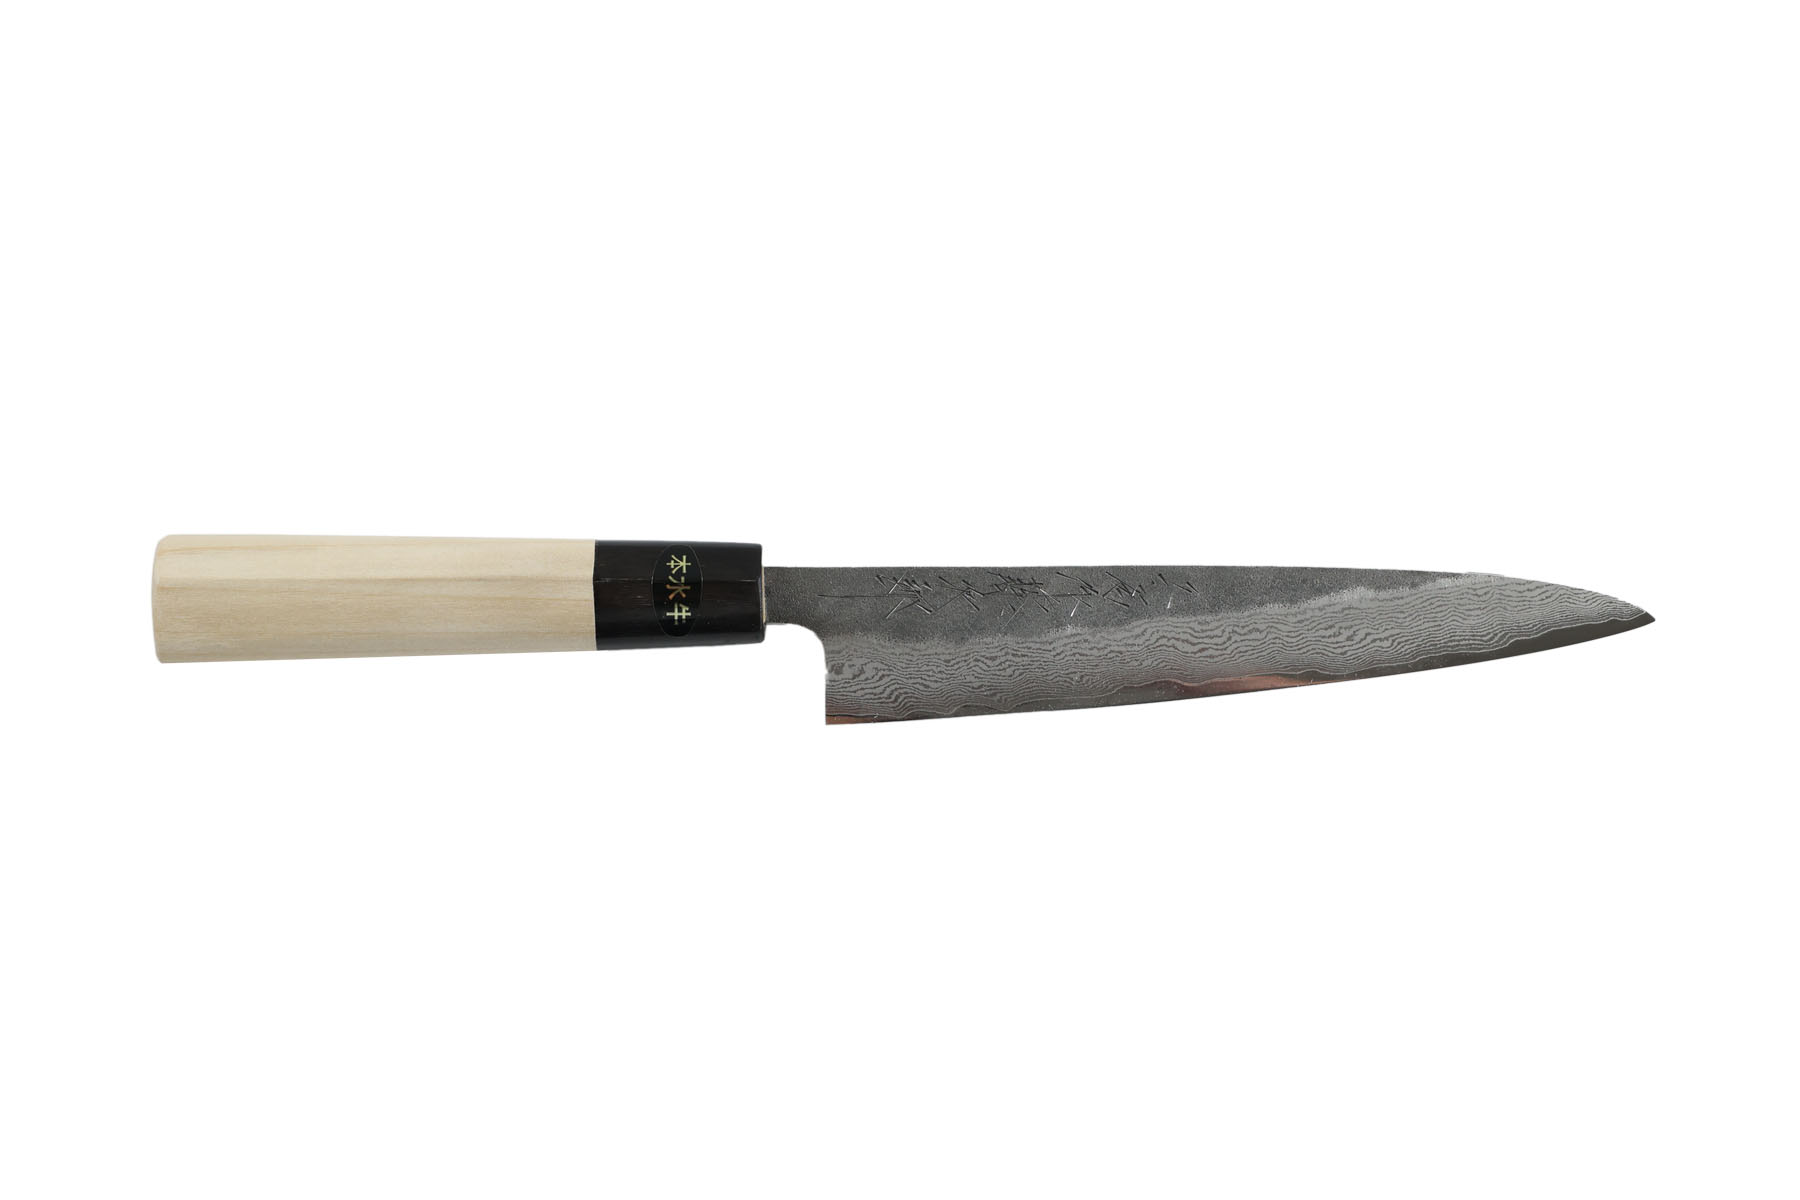 Guide d'affutage Tojiro pour couteaux japonais - Livraison rapide